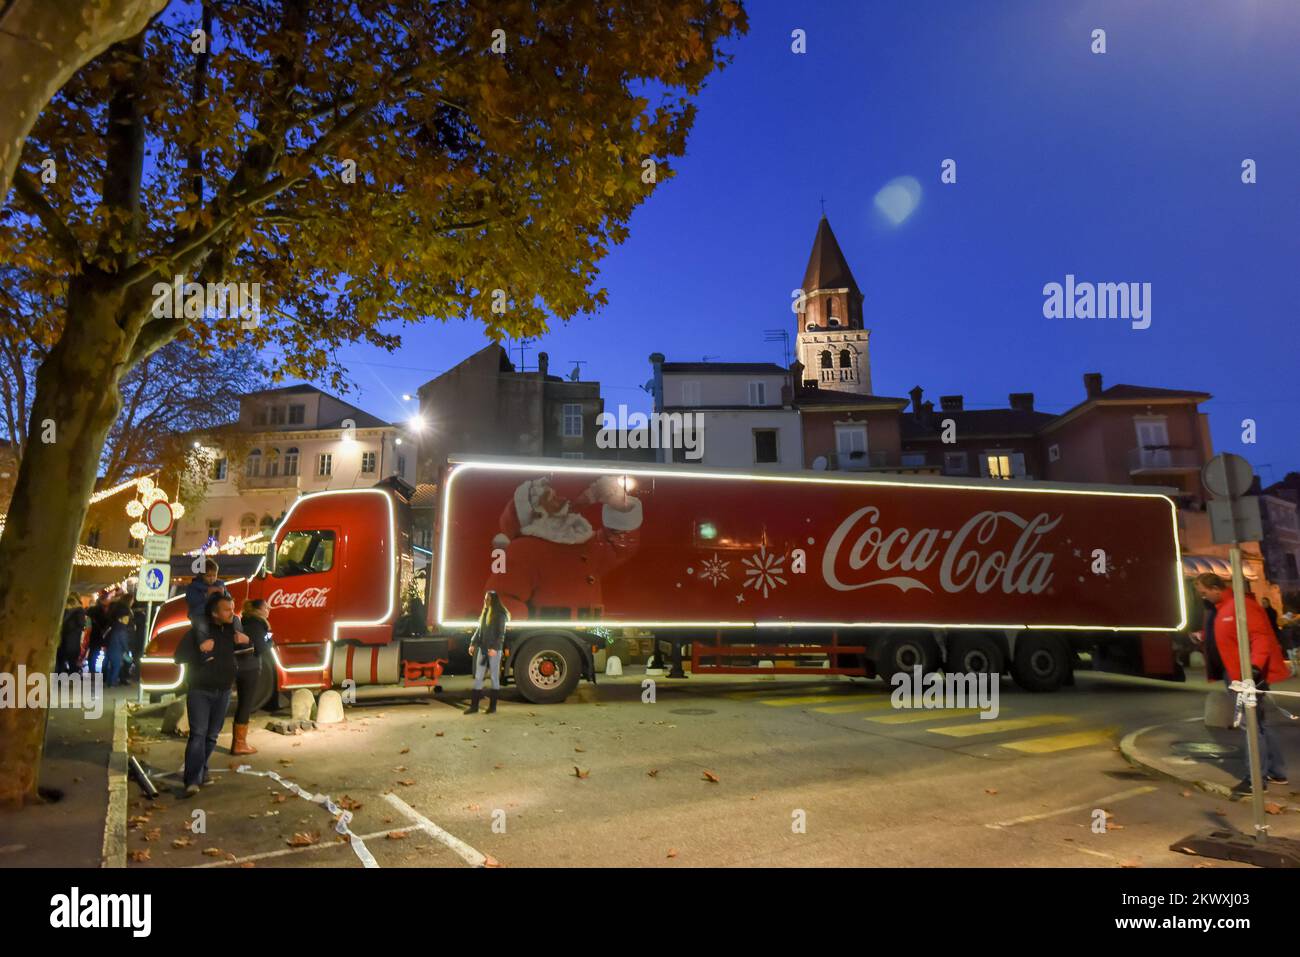 Coca Cola HBC Kroatien hat in Zusammenarbeit mit dem kroatischen Roten Kreuz einen humanitären Weihnachtswagen organisiert, der das Land bis Ende Dezember bereisen wird, um Bedürftigen zu helfen. Der berühmte Weihnachtswagen von Coca Cola fuhr am 12.. Dezember von Zagreb in sieben weitere kroatische Städte. Täglich von 5 Uhr bis 20 Uhr Coca Colas Weihnachtswagen wird an einem besonderen Ort in jeder Stadt geparkt. Bei dieser Gelegenheit wird der Weihnachtsmann den Wünschen der Kinder lauschen, die die Gelegenheit haben werden, ein Foto mit ihm zu machen und ihr Spielzeug zu spenden. Das gesammelte Spielzeug, das Coca Cola hat Stockfoto